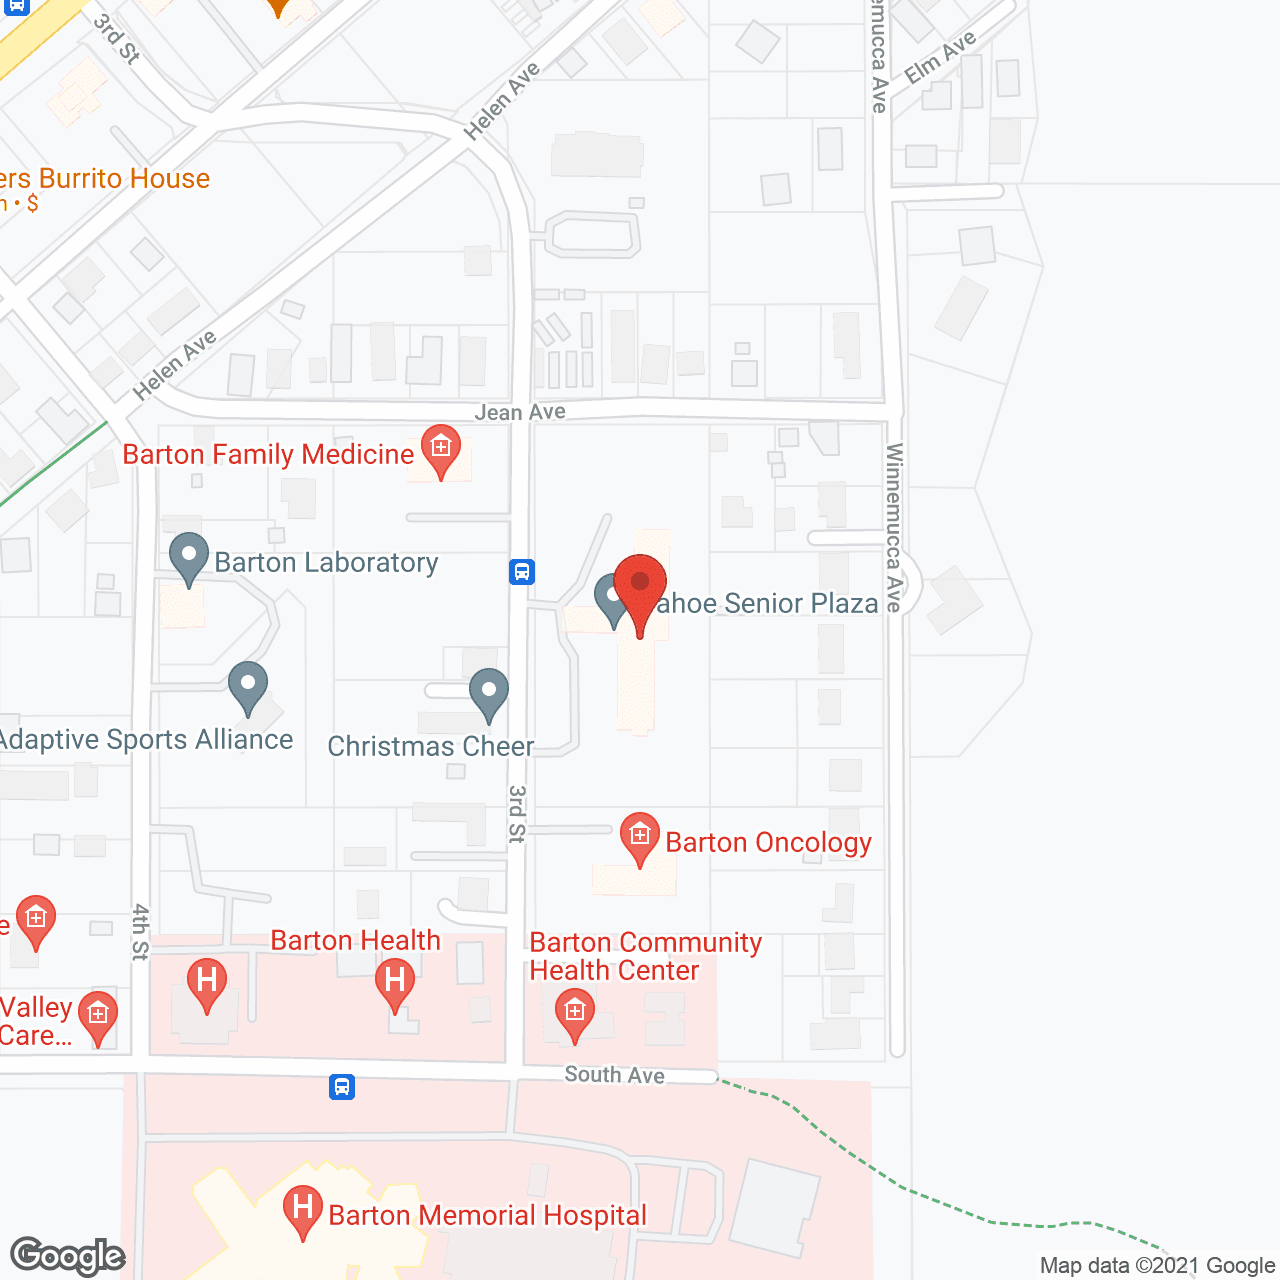 Tahoe Senior Plaza in google map